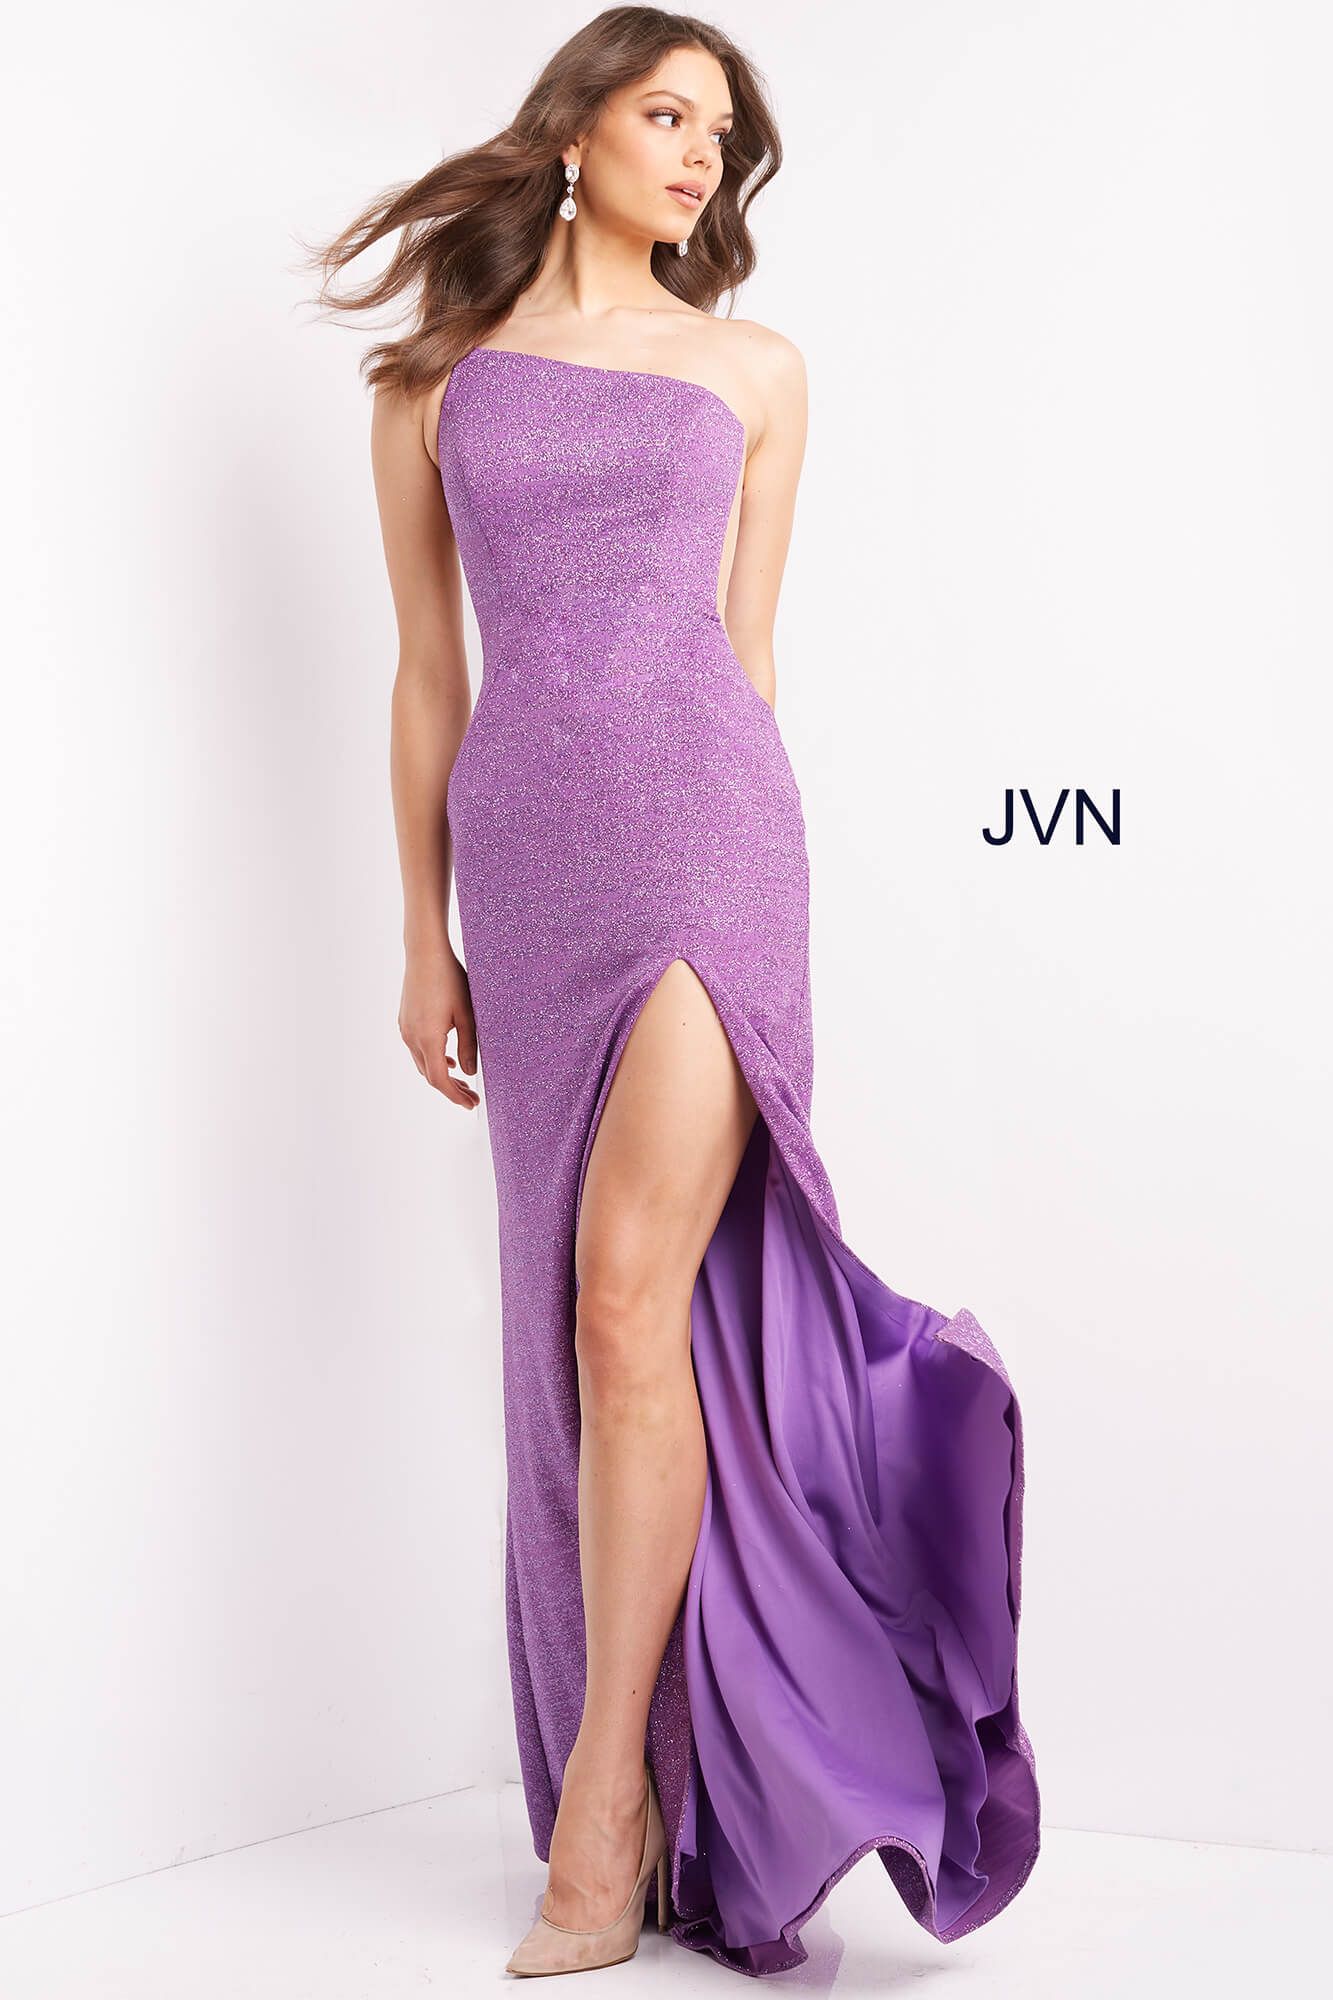 JVN06126 JVN06126 One Shoulder Prom Dress Sheer Sides High Slit Fitted Shimmer